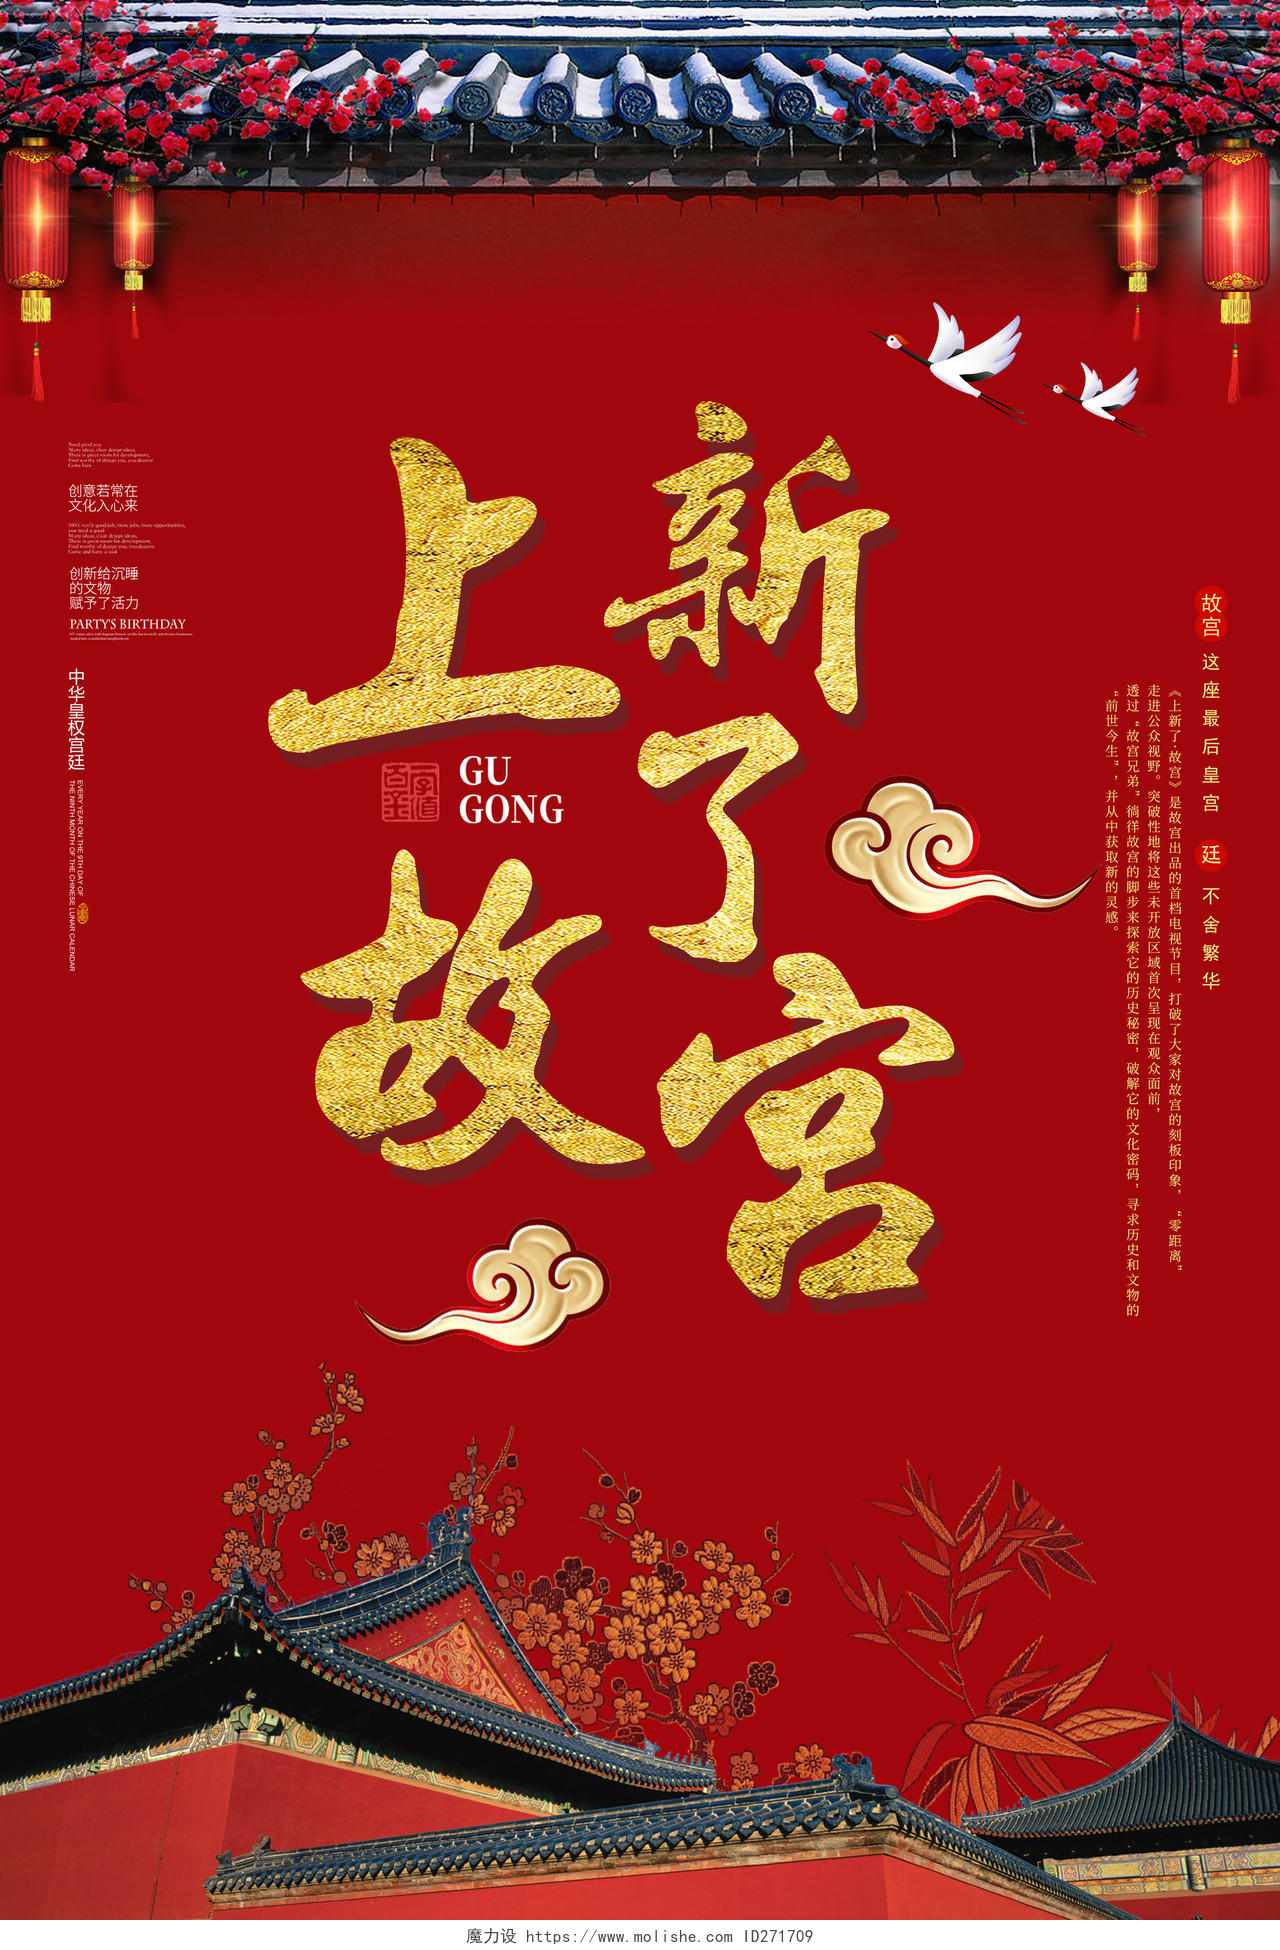 上新了故宫博物馆北京皇家宫殿紫禁城海报